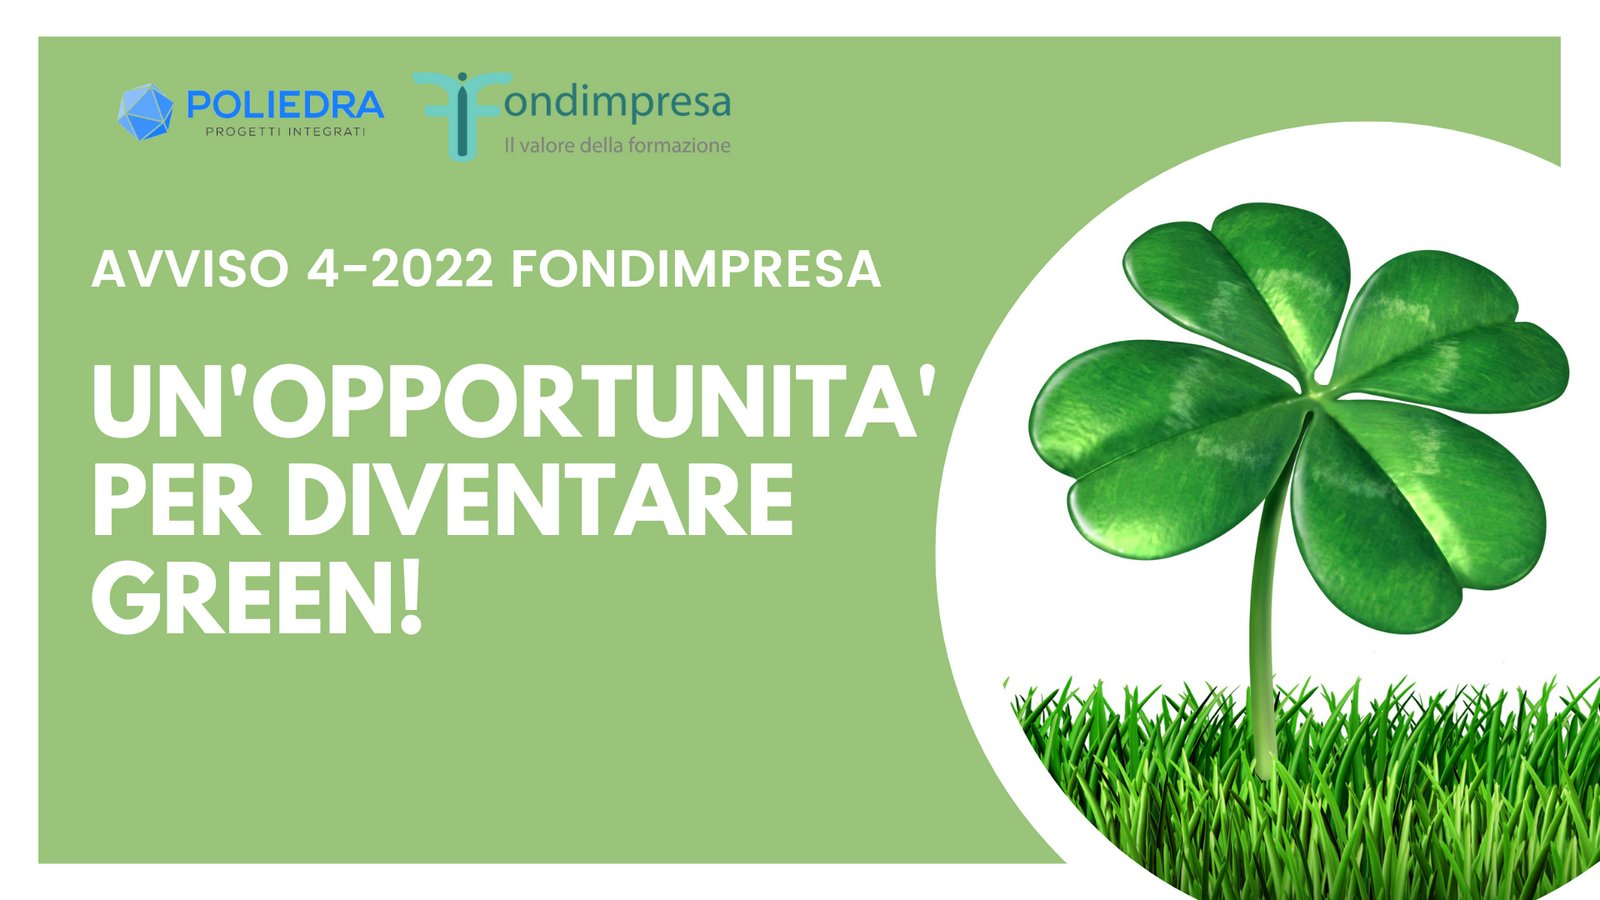 FONDIMPRESA - AVVISO 4-2022 - FORMAZIONE A SOSTEGNO DELLA GREEN TRANSITION E DELLA CIRCULAR ECONOMY